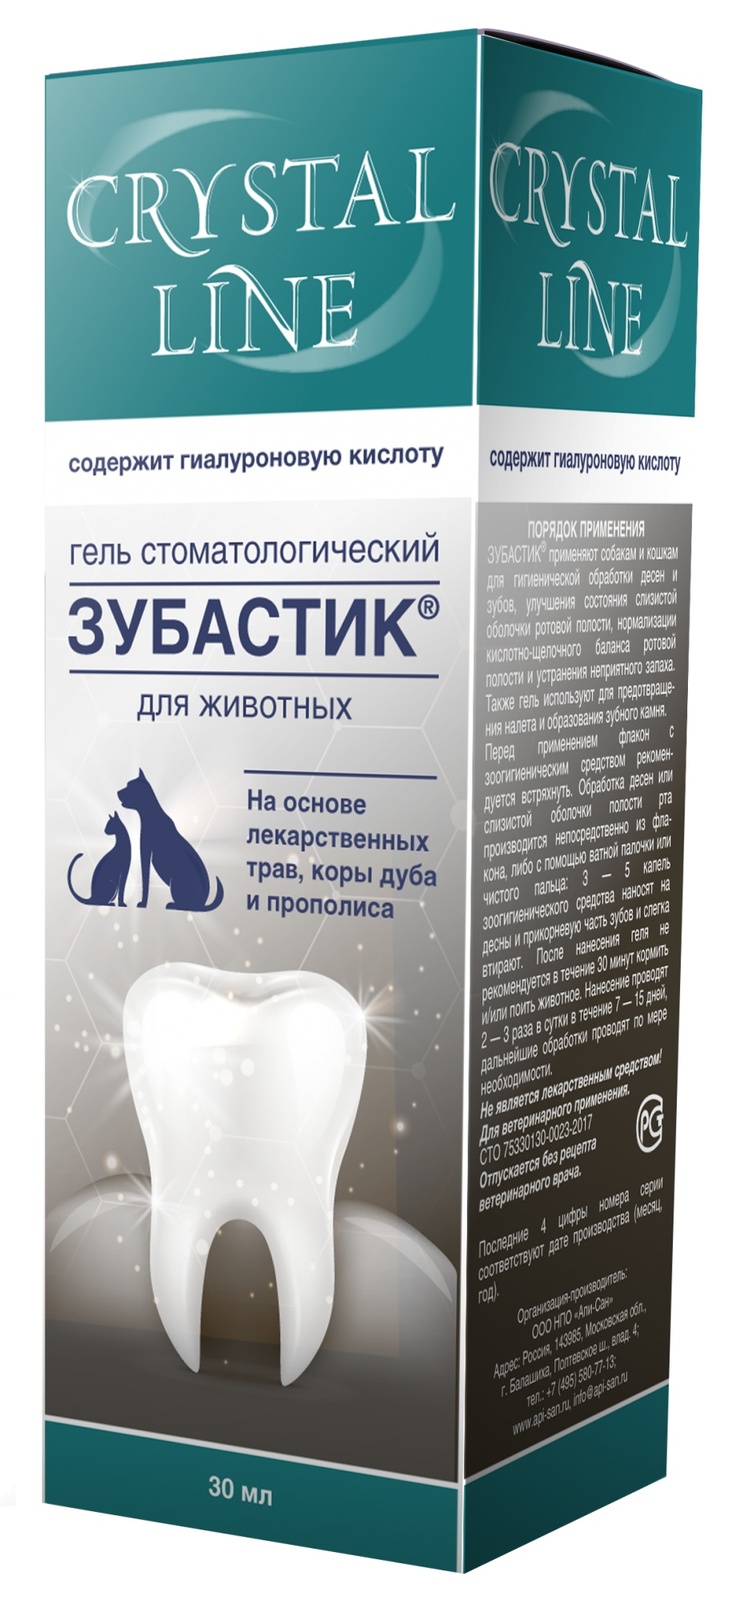 стоматологический гель для животных apicenna зубастик crystal line 30мл Apicenna Apicenna зубастик гель для чистки зубов Crystal line (30 г)